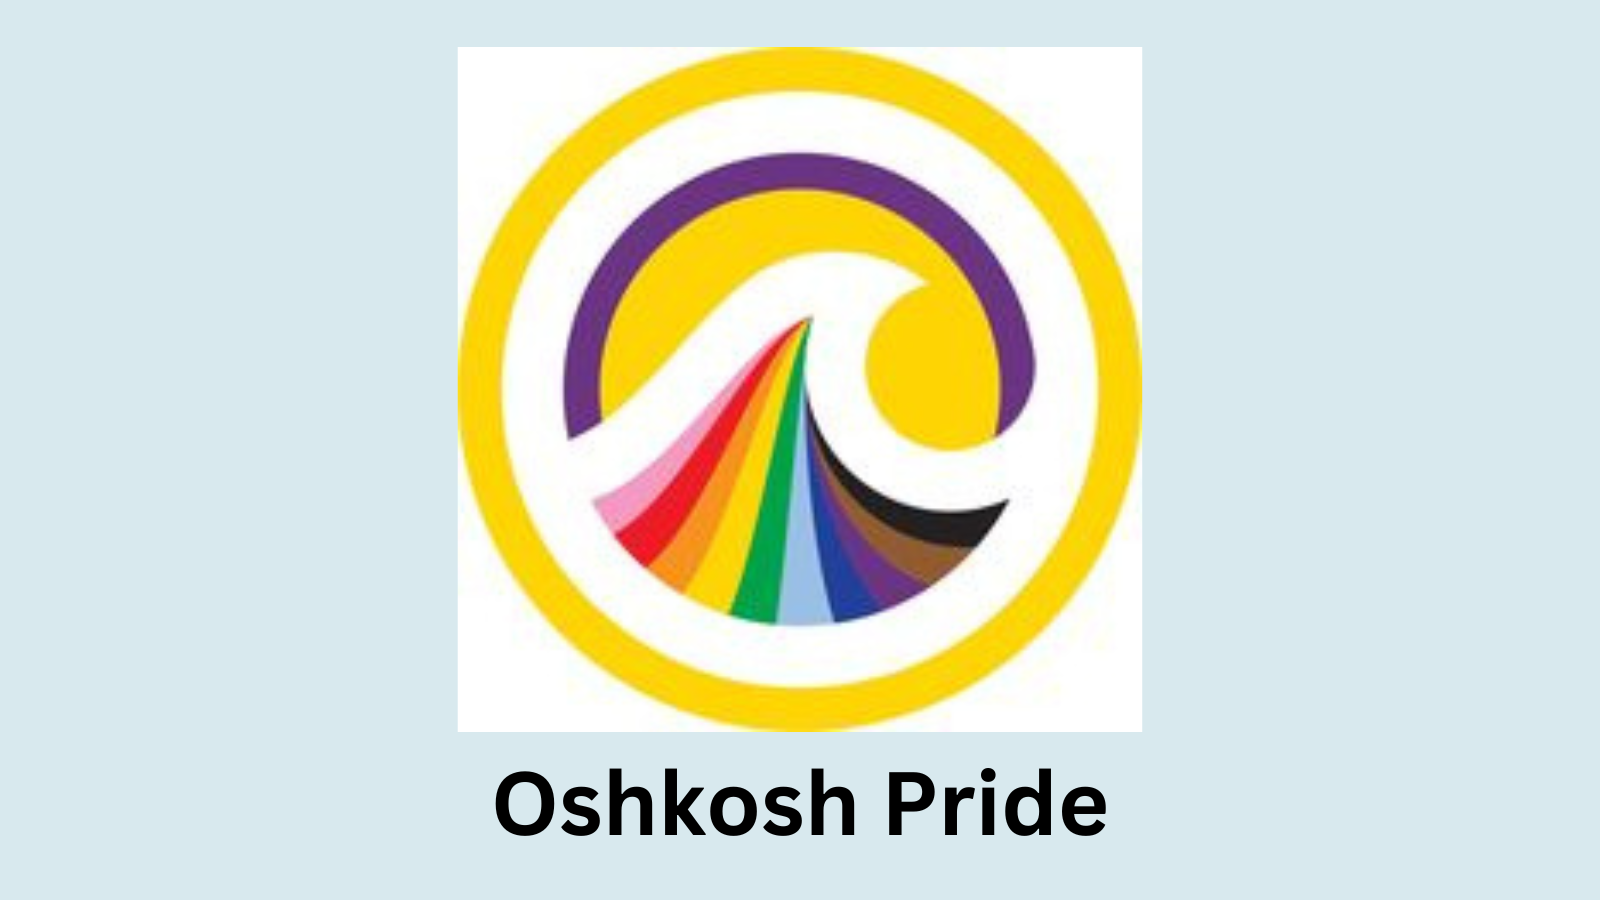 Oshkosh Pride comes to the Leach Ampitheater